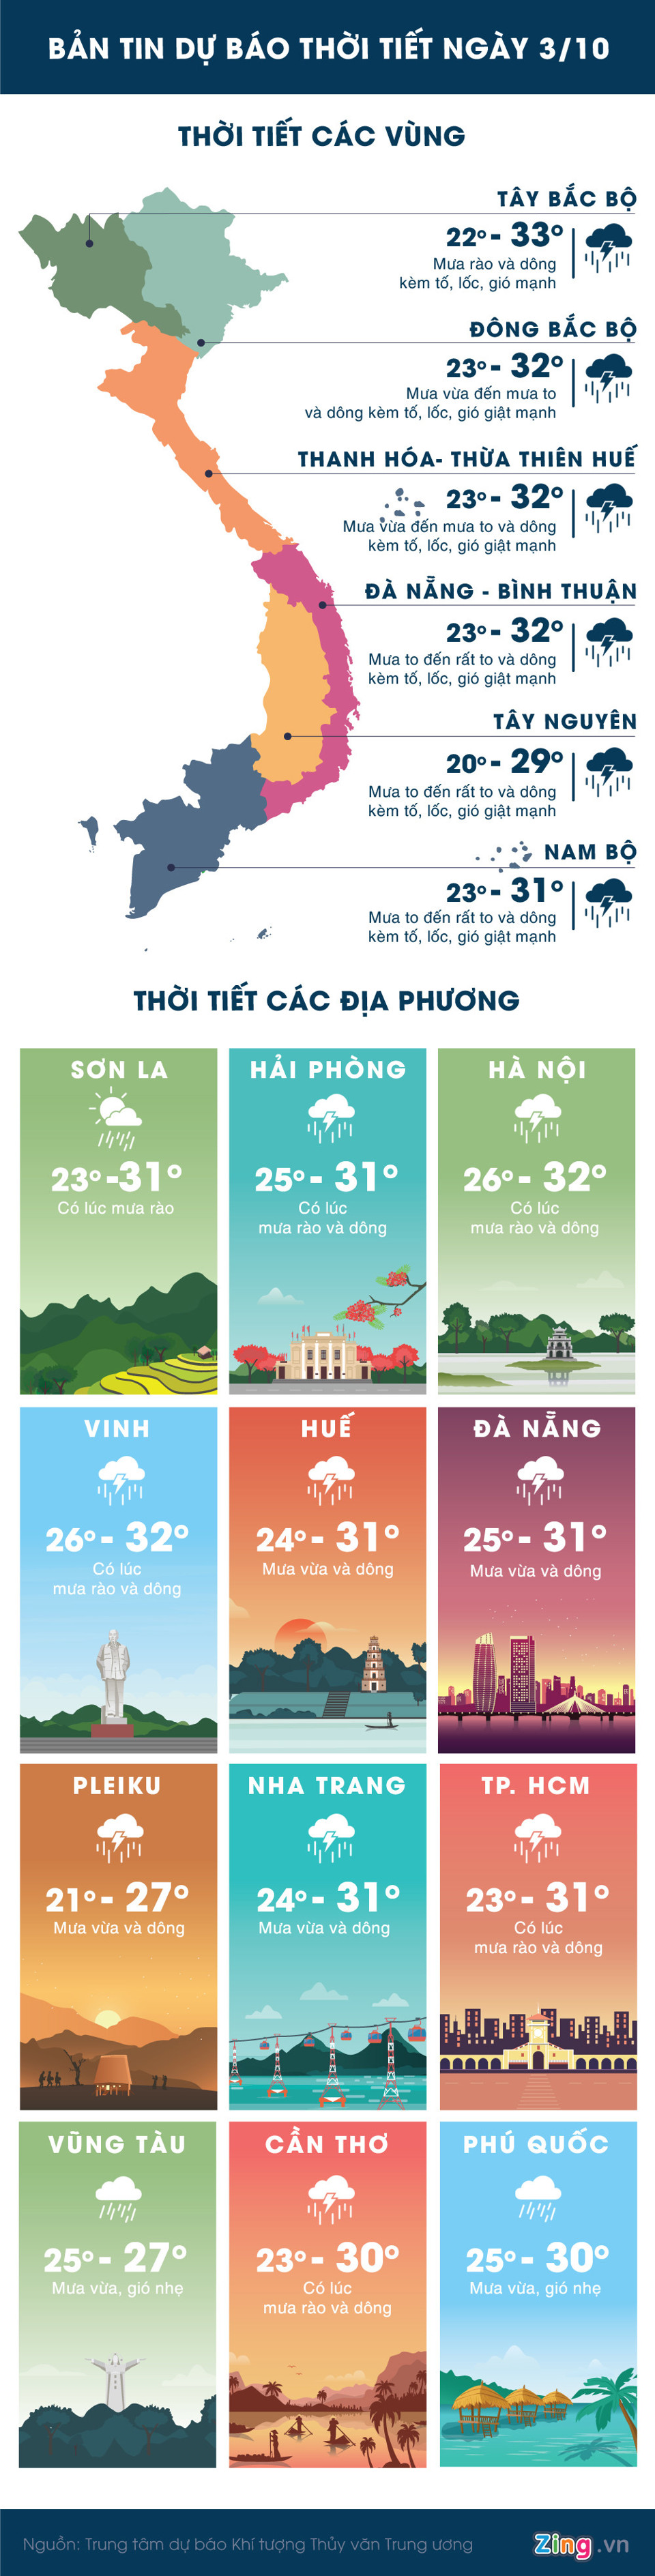 Hà Nội có mưa rào, nguy cơ cao ngập lụt ở Trung và Nam Bộ - Ảnh 1